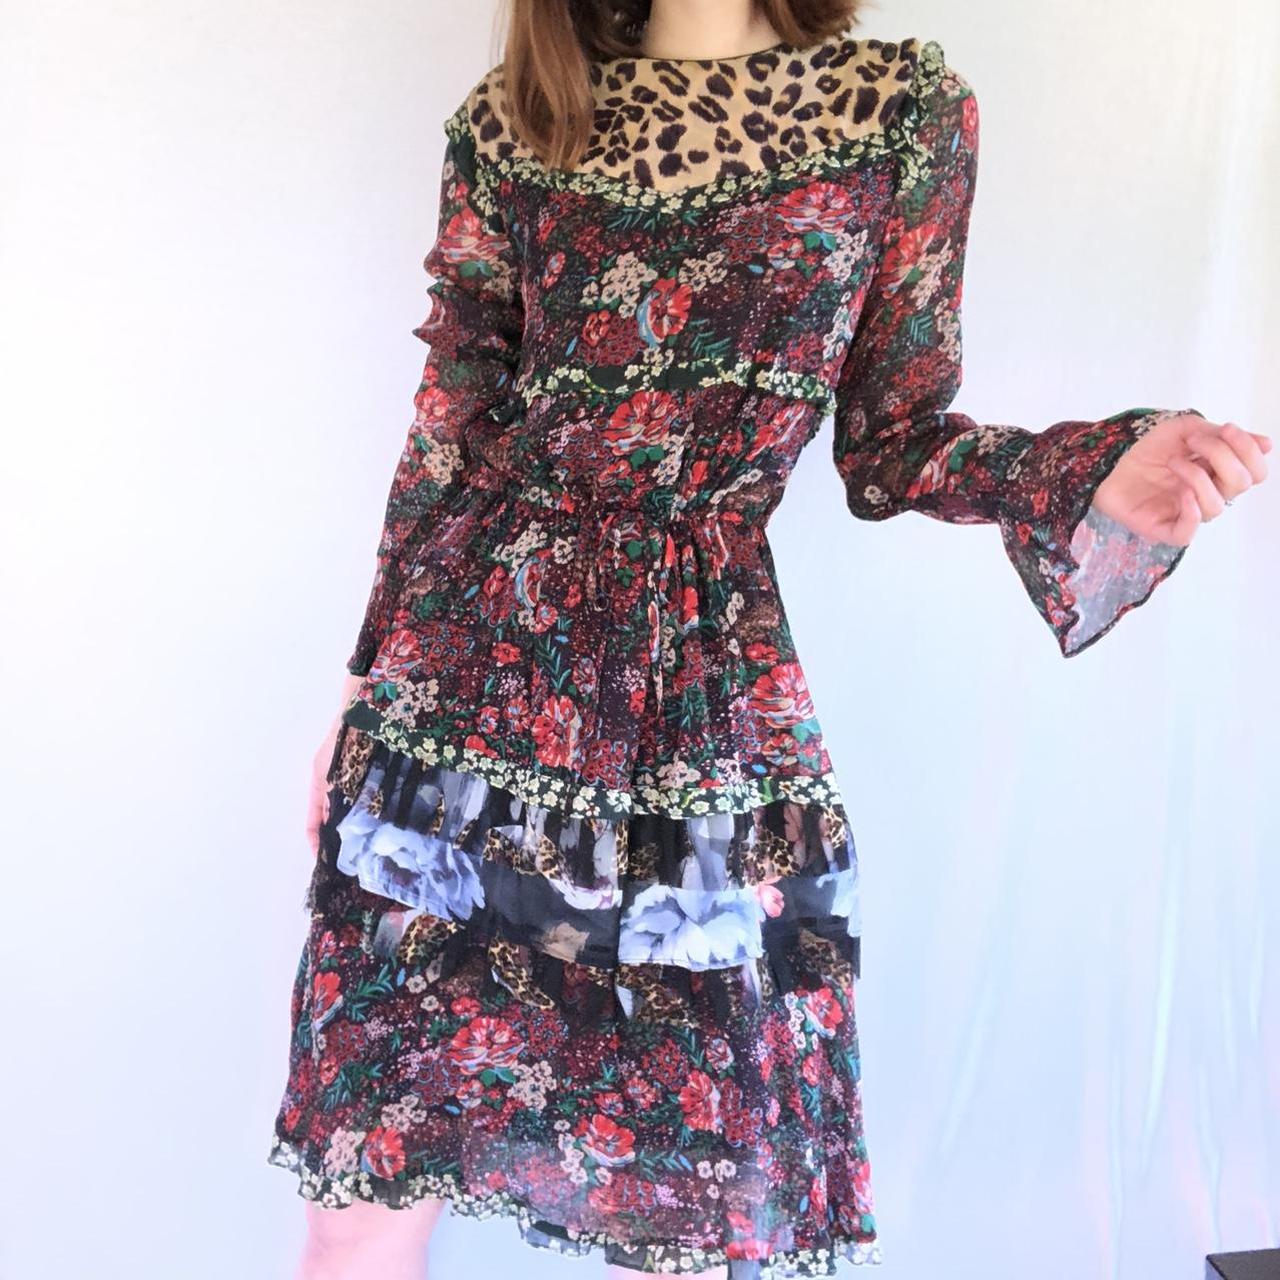 Product Image 1 - Beautiful multi-patterned layered chiffon dress.